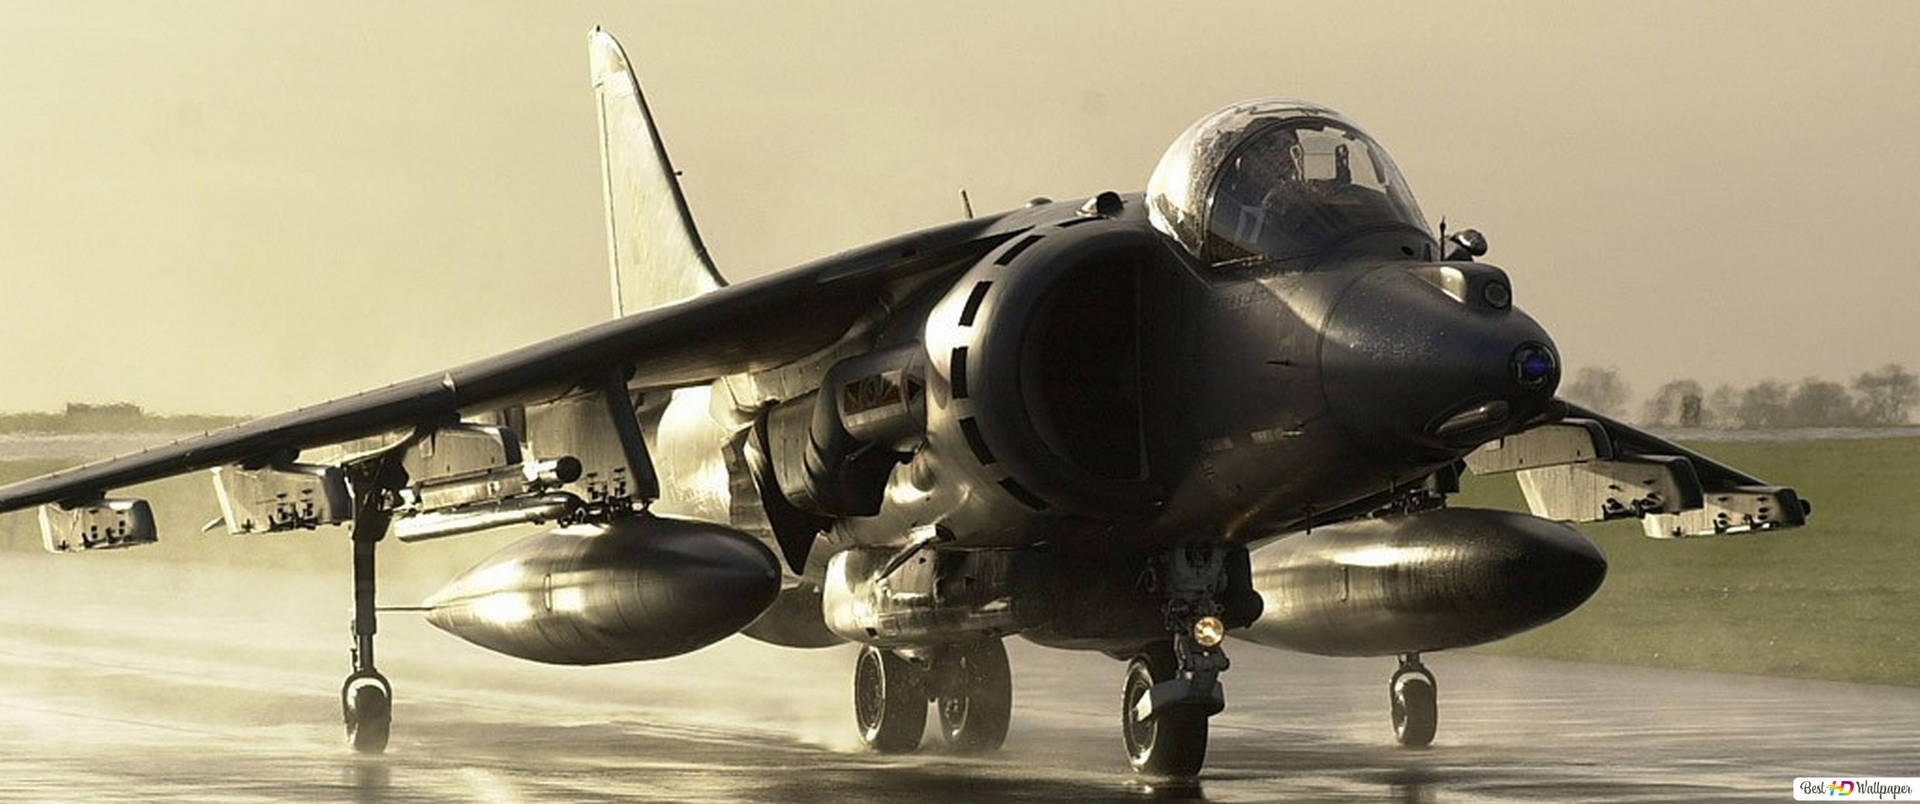 Bulky Jet Fighter Background